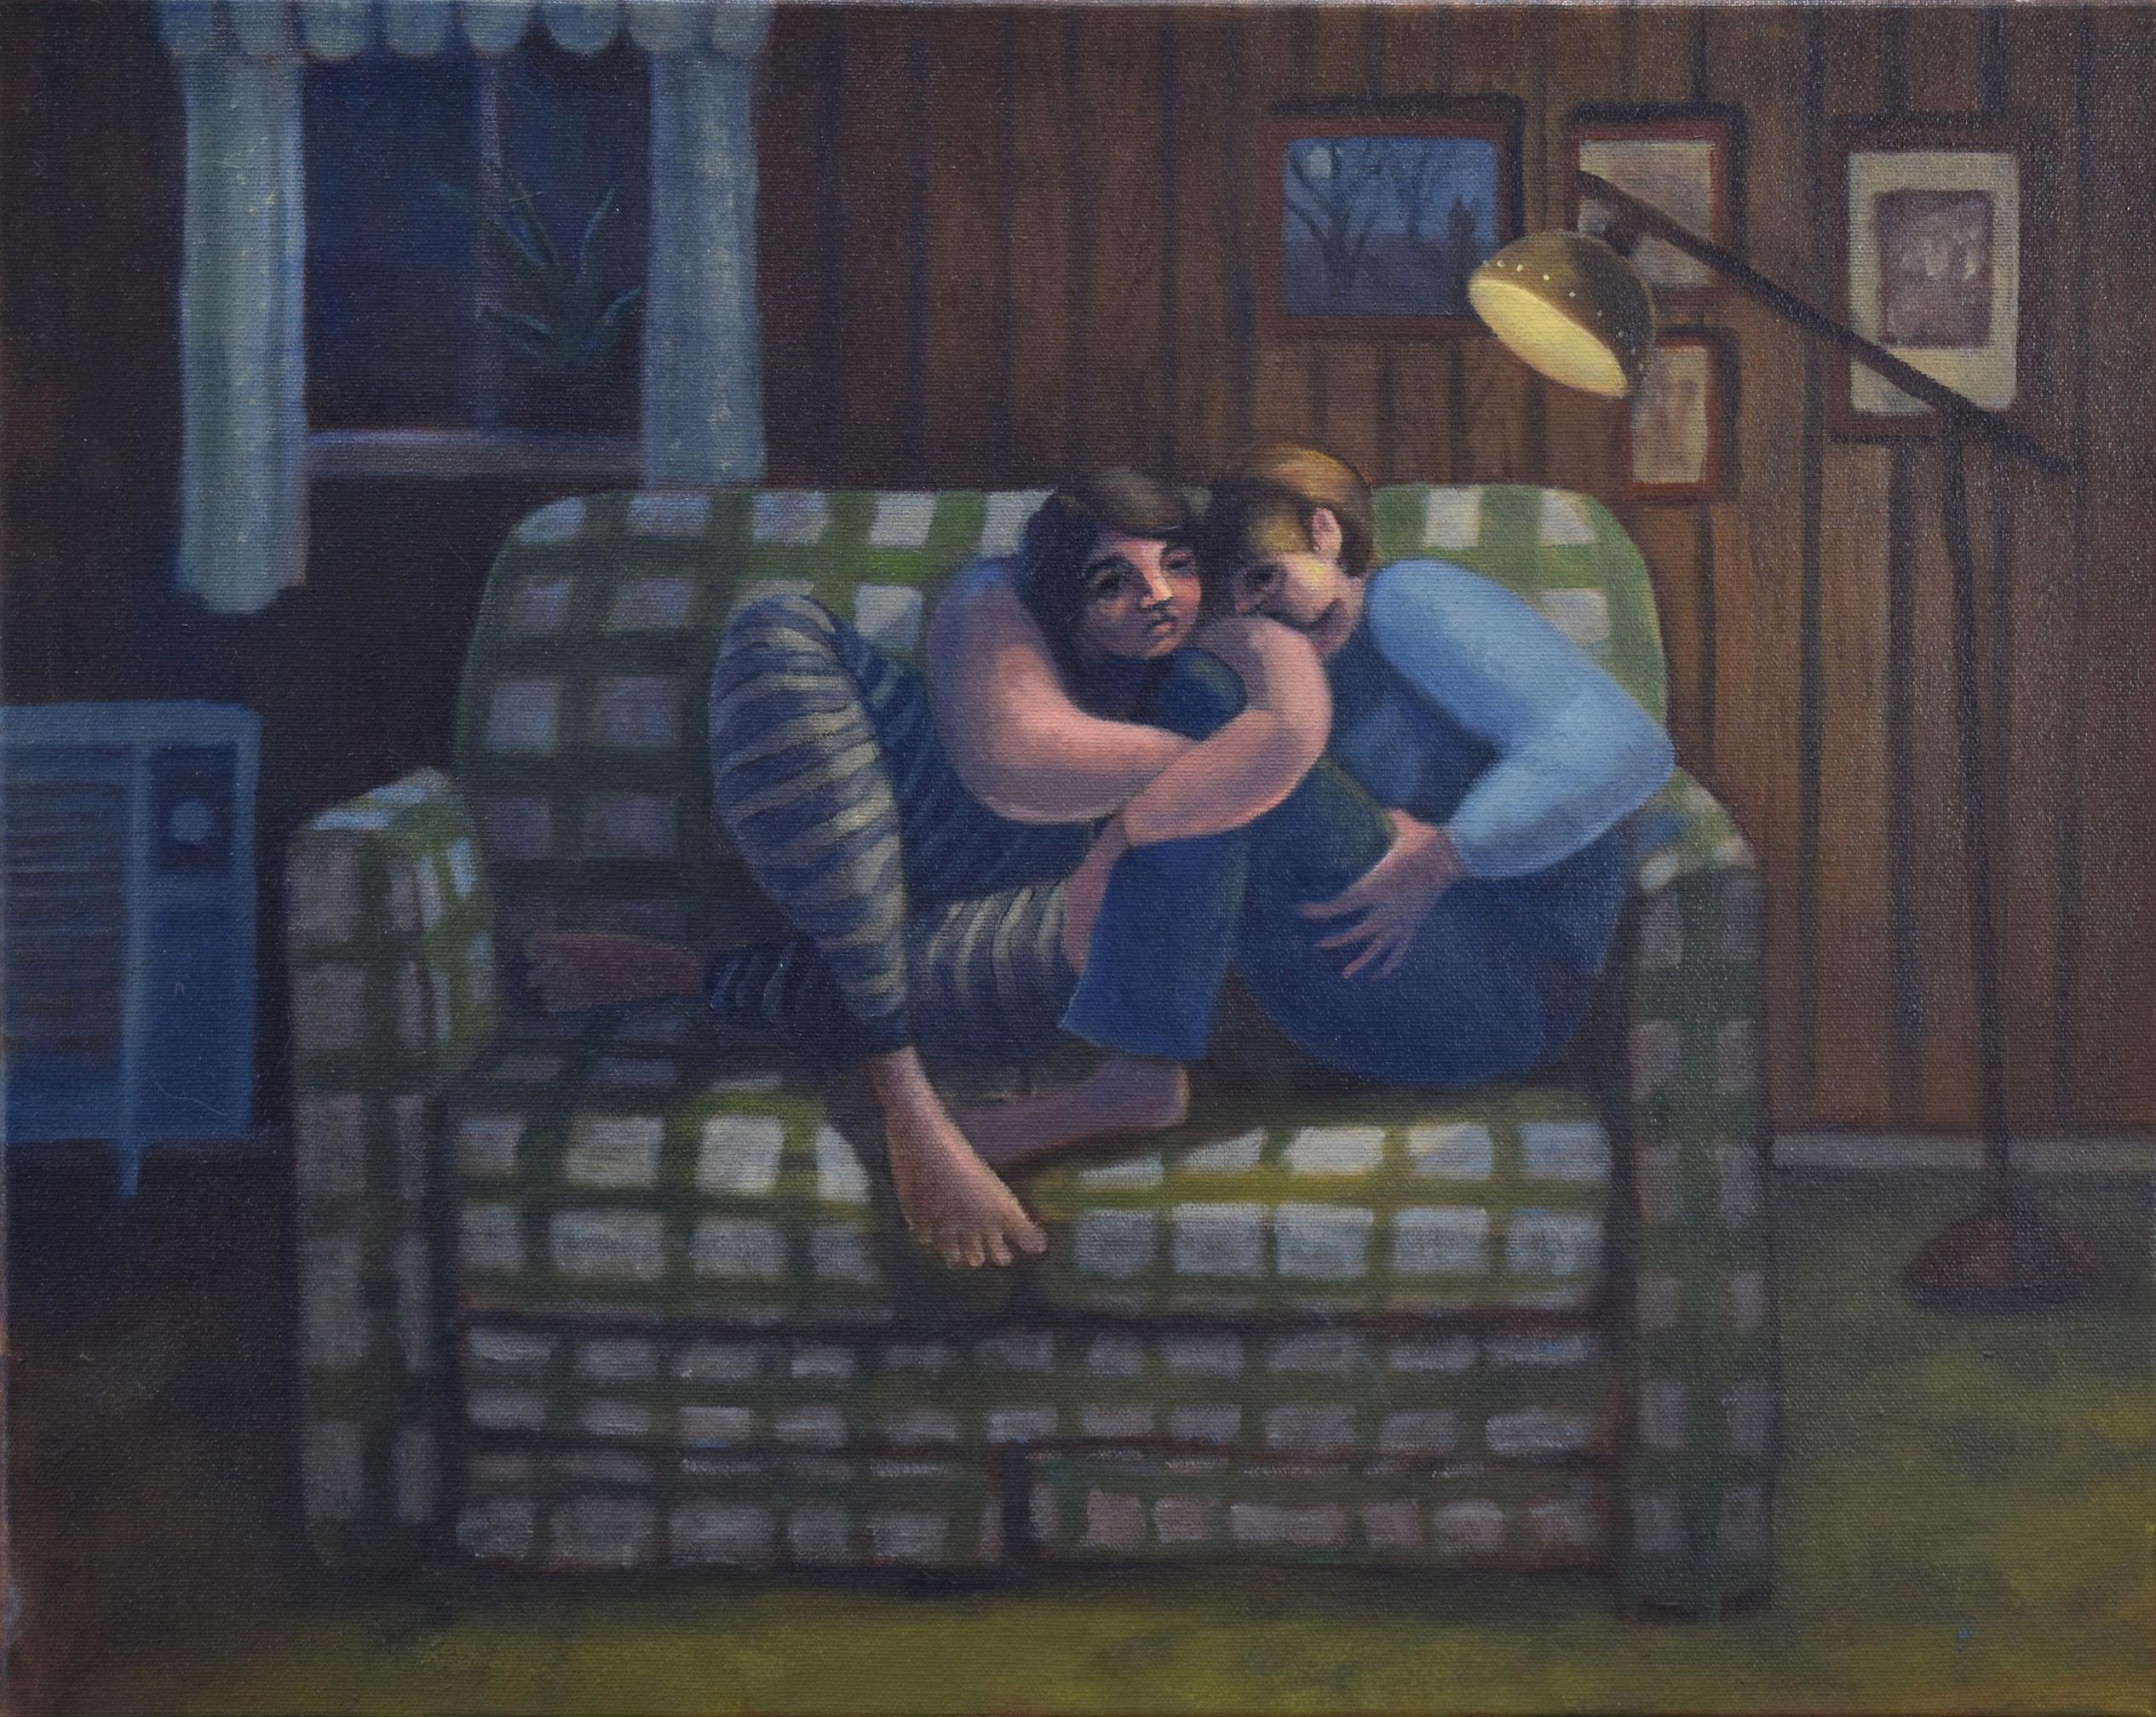 Unser grün kariertes Sofa ist ein Gemälde von Emily Royer, das zwei Figuren zeigt, die sich in einem dunkel getäfelten Raum mit einer einzigen Lampe aneinander lehnen. 